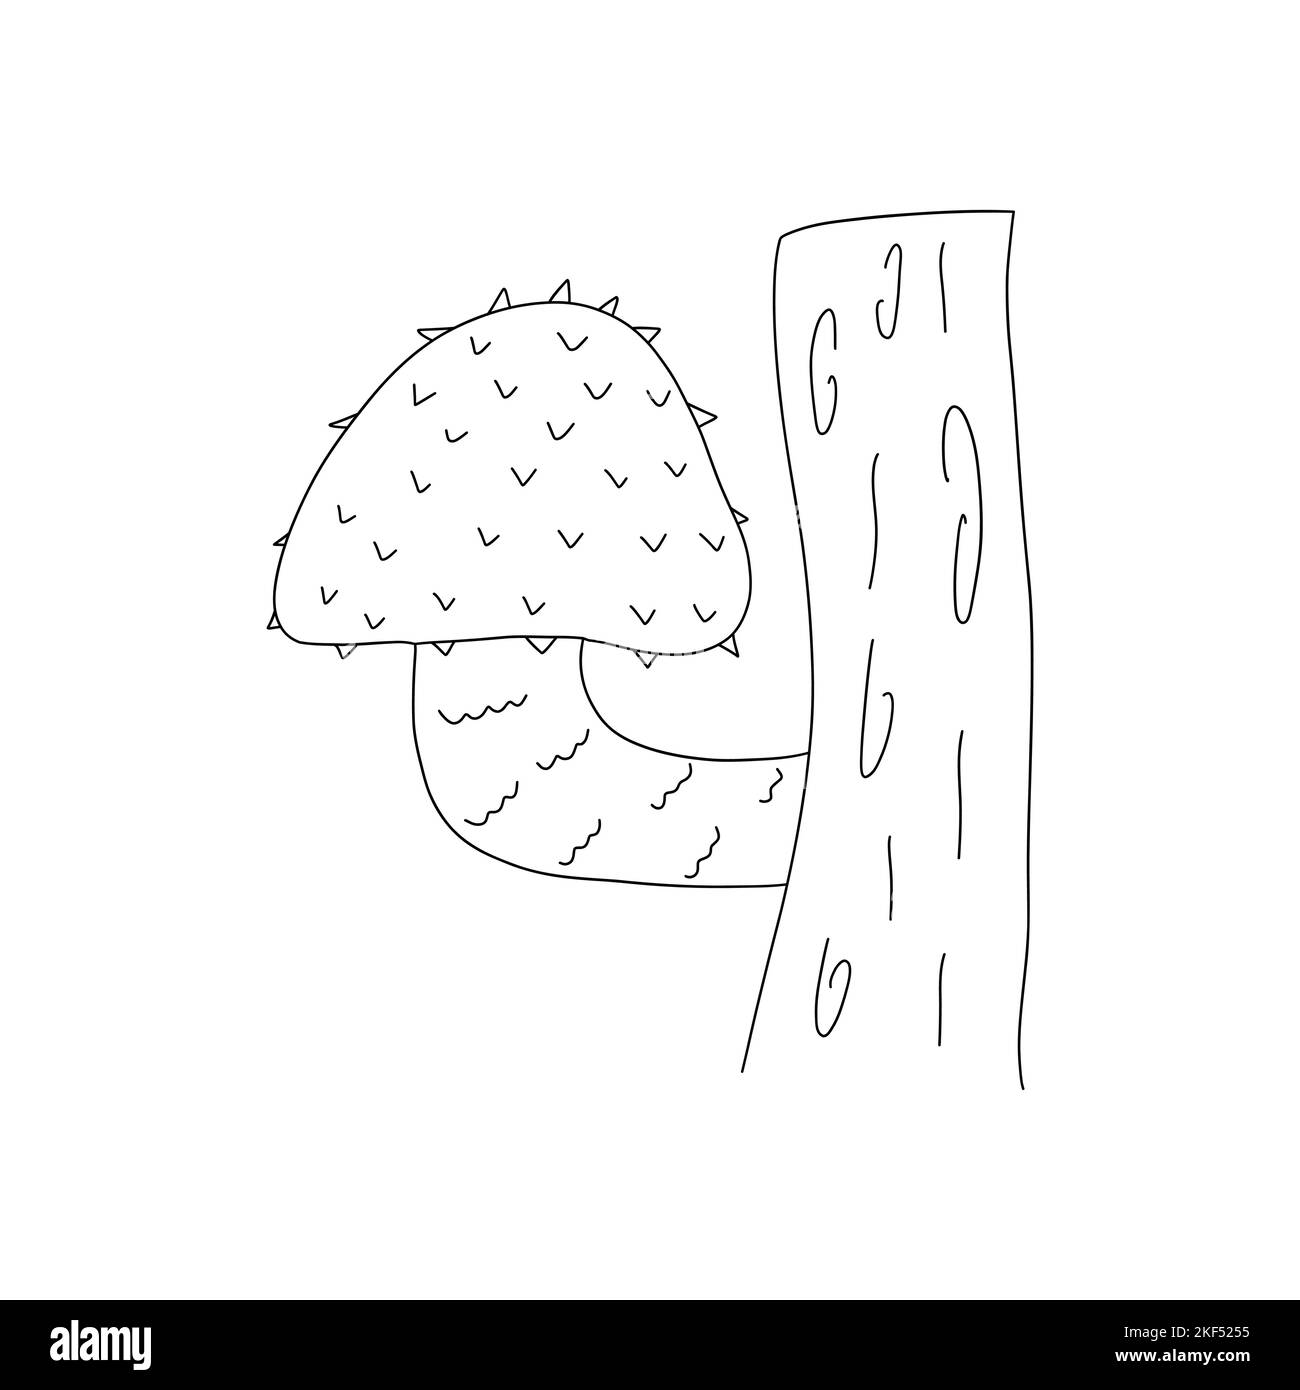 Der raue Pilz wächst auf einem Baumstamm. Vektor schwarz-weiß isolierte Illustration Hand gezeichnete Doodle. Einfache Karte oder Druck Stock Vektor